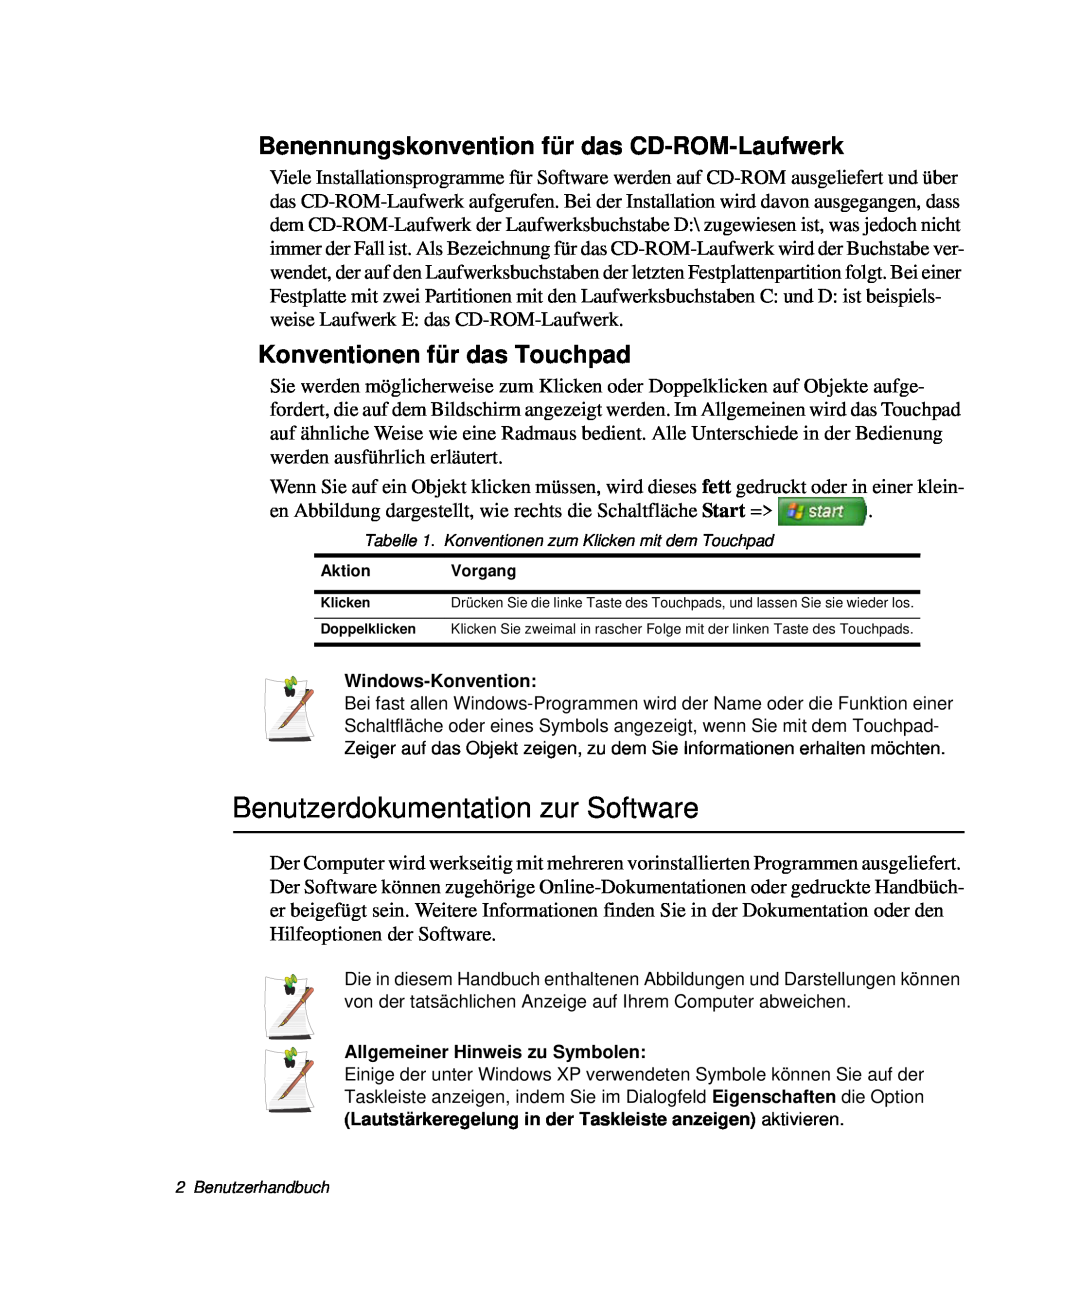 Samsung NP-R40K003/SEG, NP-R40FY0B/SEG Benutzerdokumentation zur Software, Benennungskonvention für das CD-ROM-Laufwerk 